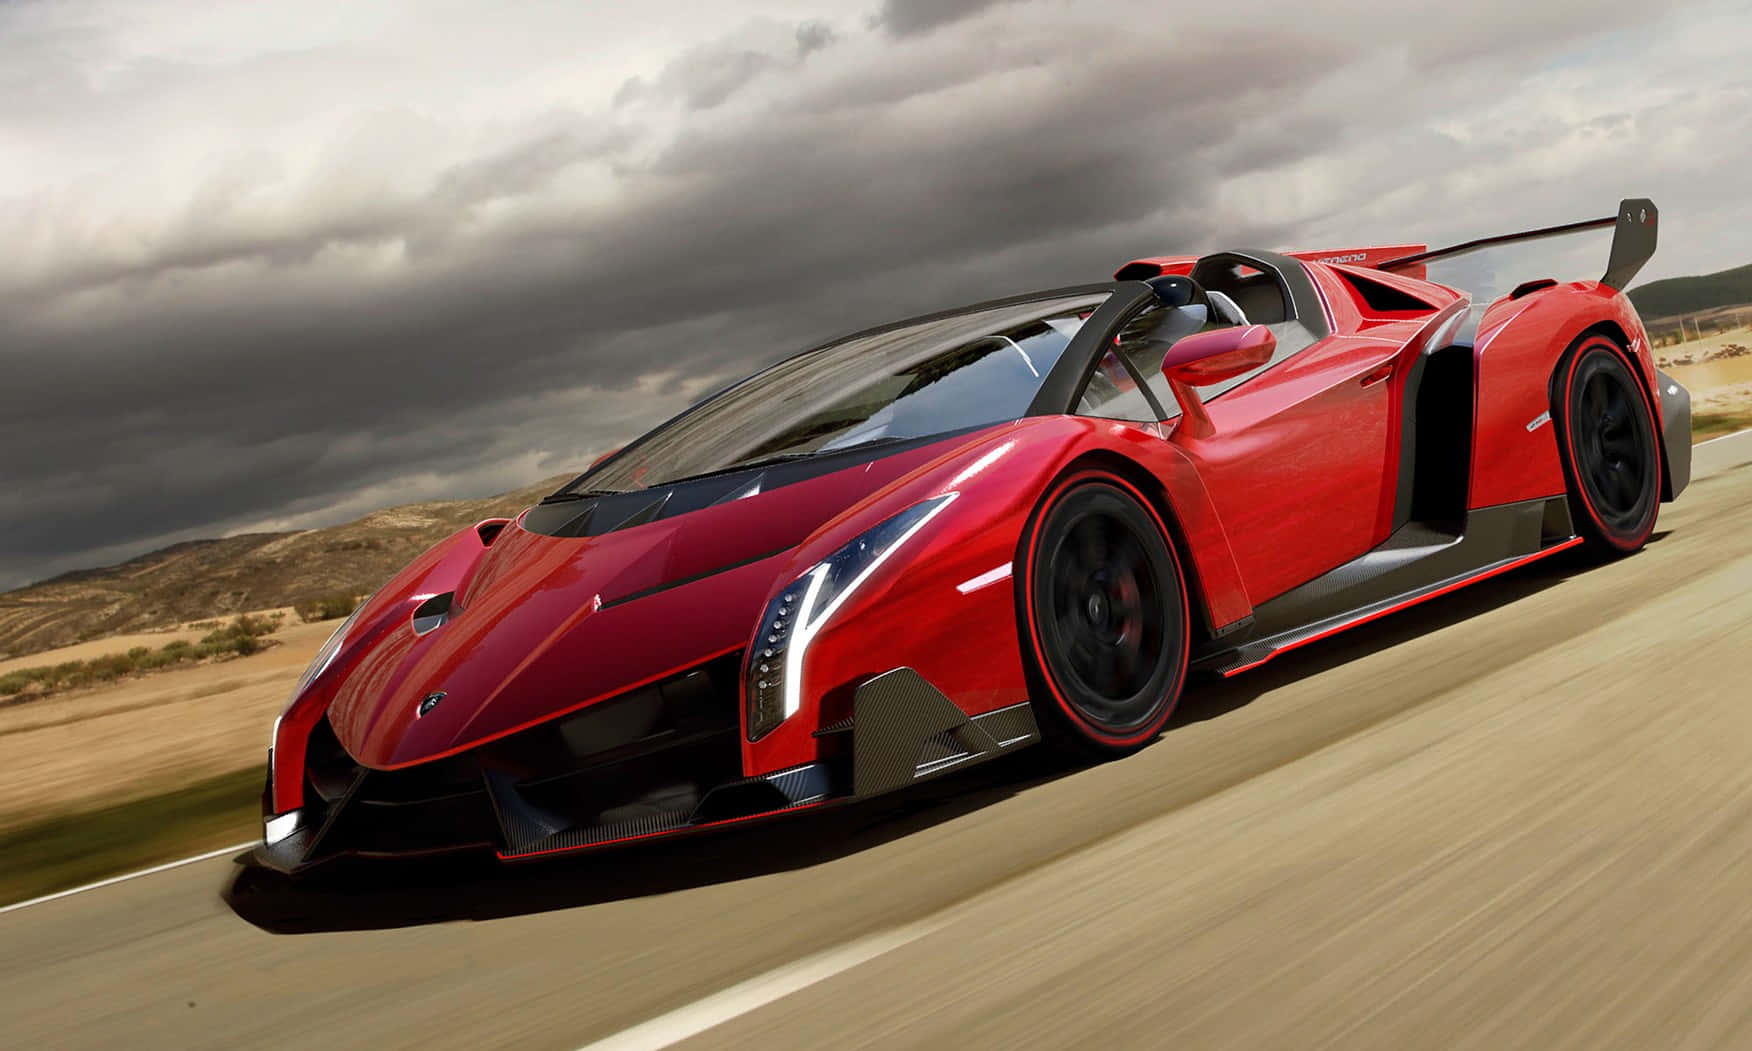 Desbloqueael Poder De La Velocidad Con Increíbles Lamborghinis.